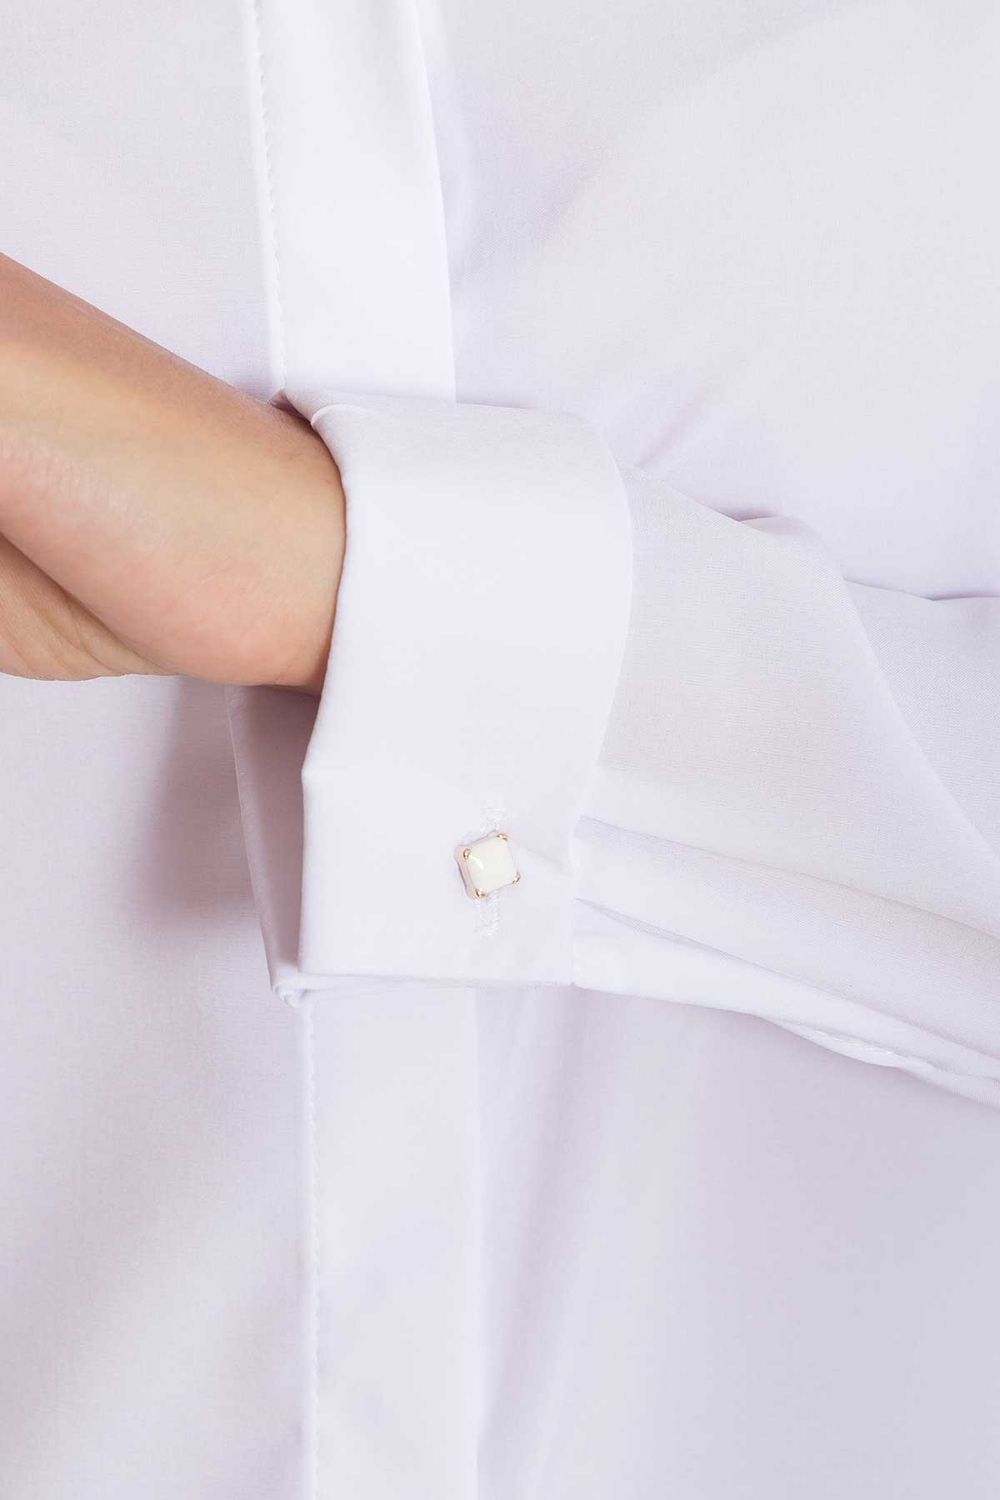 Белая офисная блузка в деловом стиле - фото